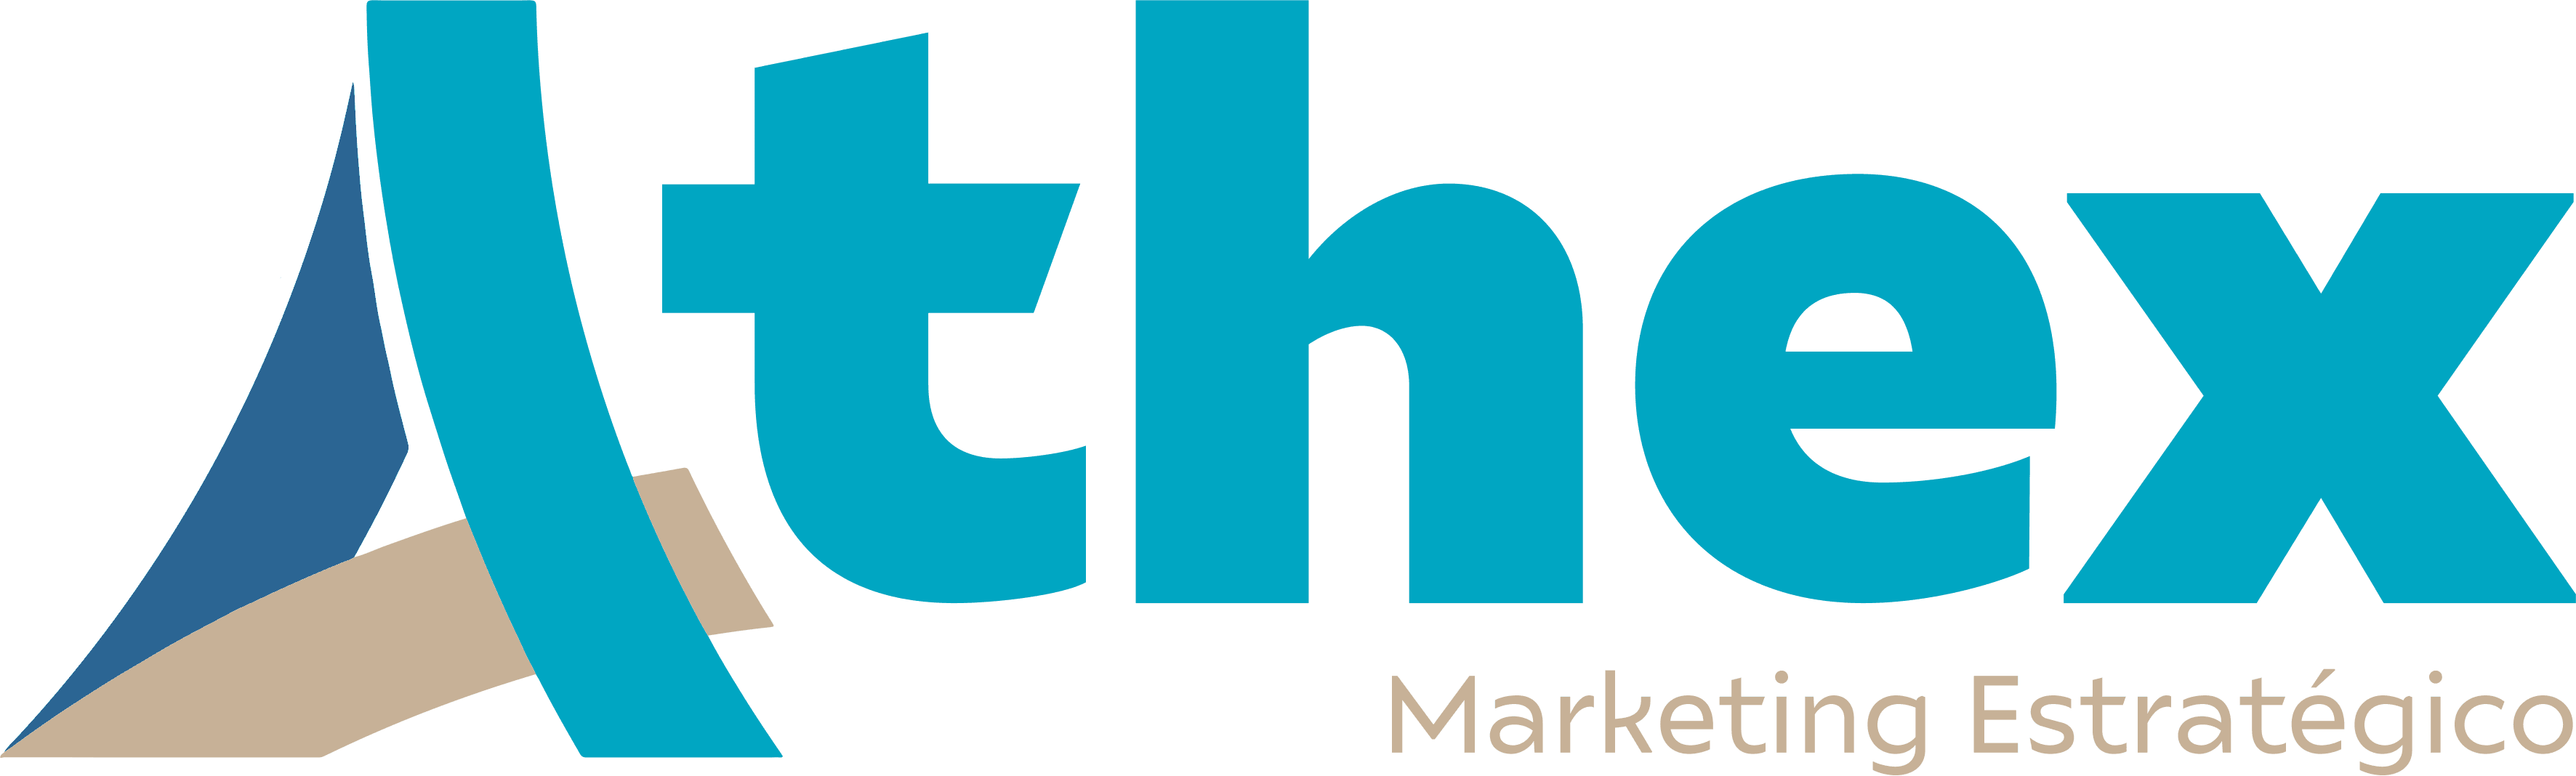 Athex Marketing Estratégico